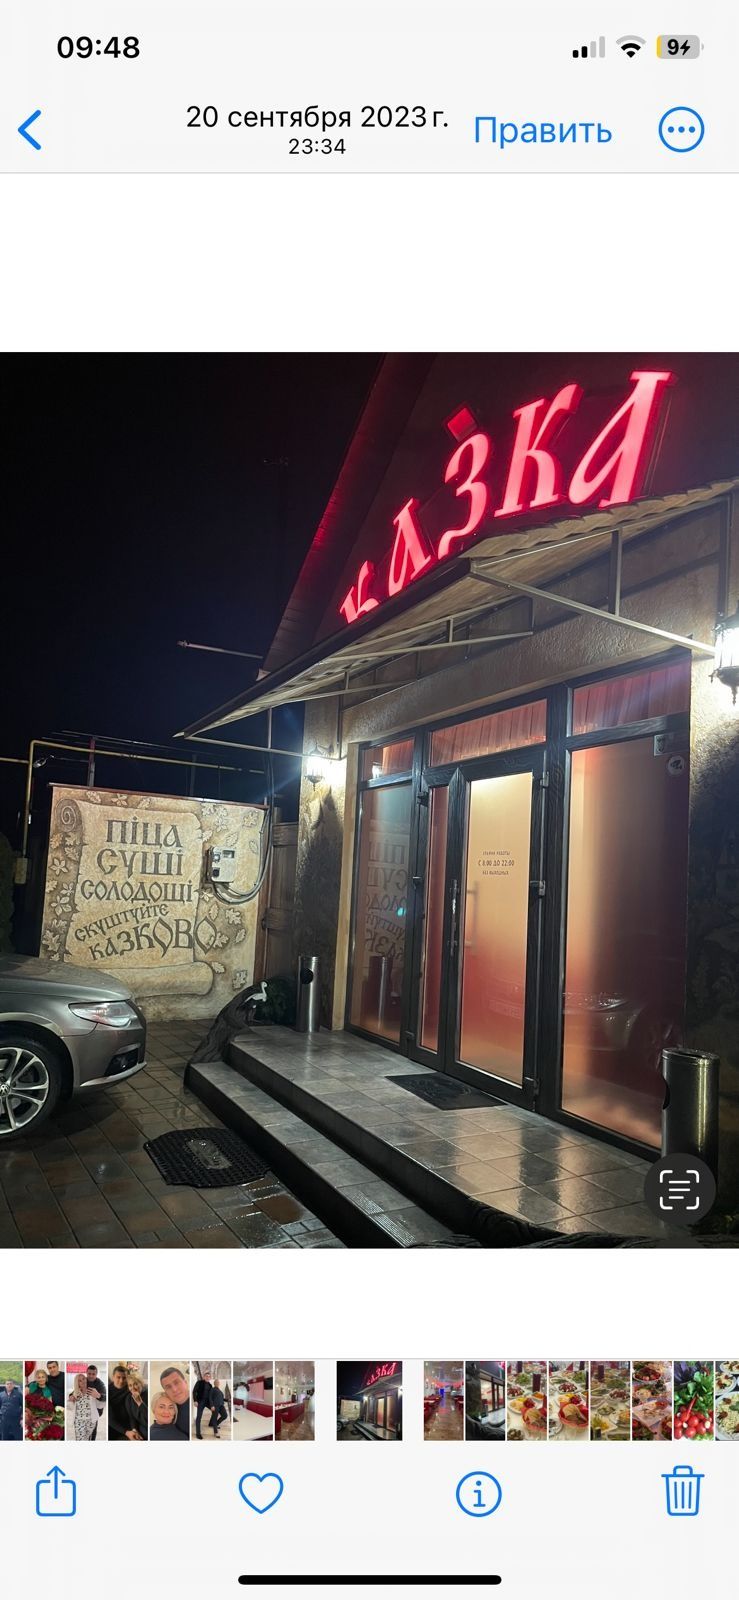 Продаётся готовый бизнес в центре Усатово вместе с кафе - рестораном.